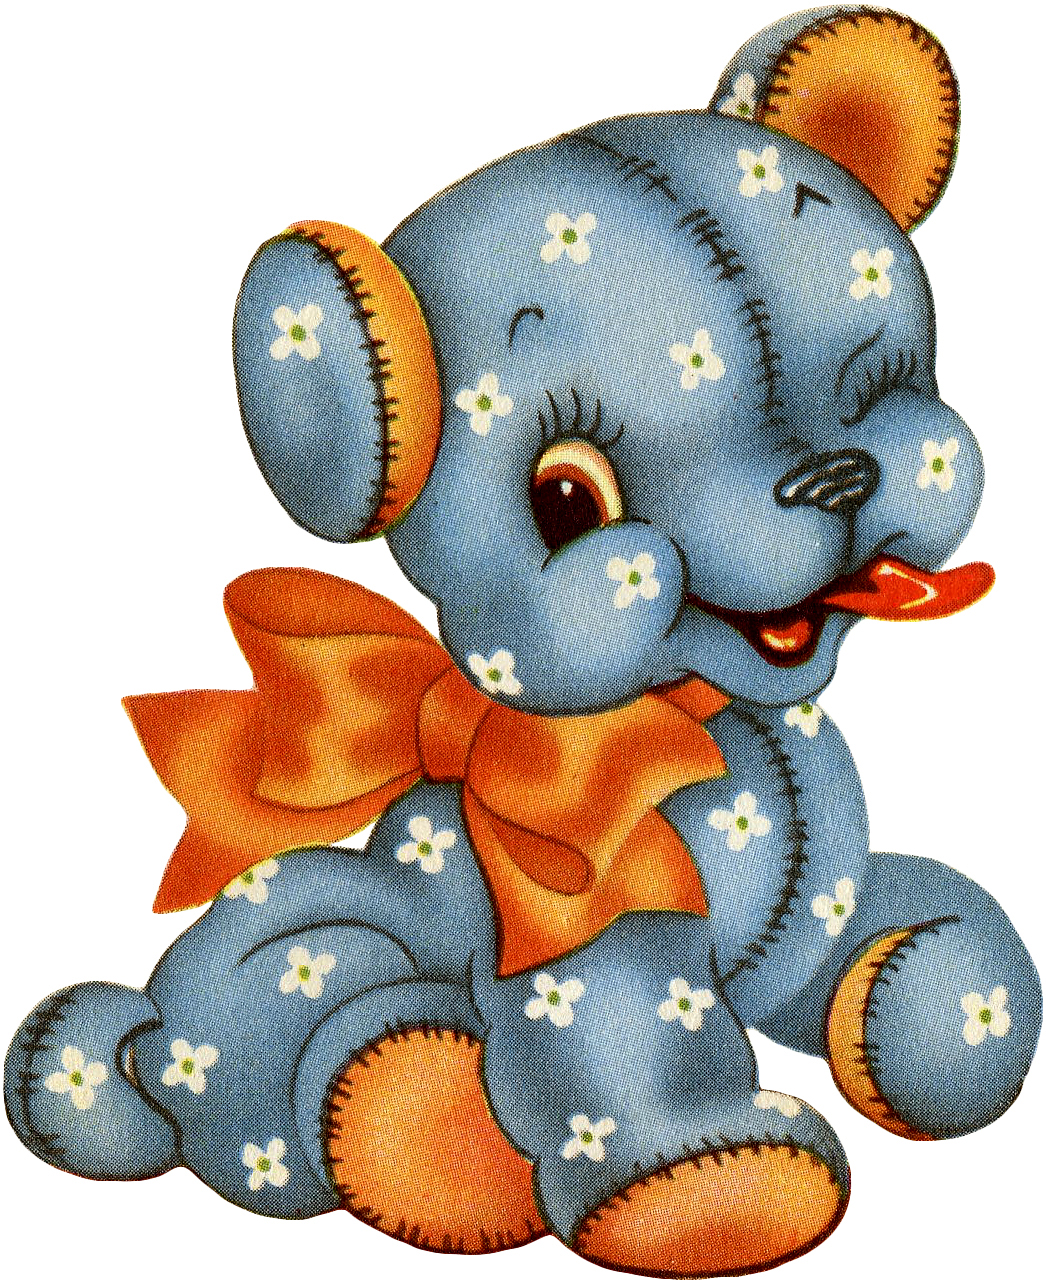 5 Cute Teddy Bear Clipart! - The Graphics Fairy